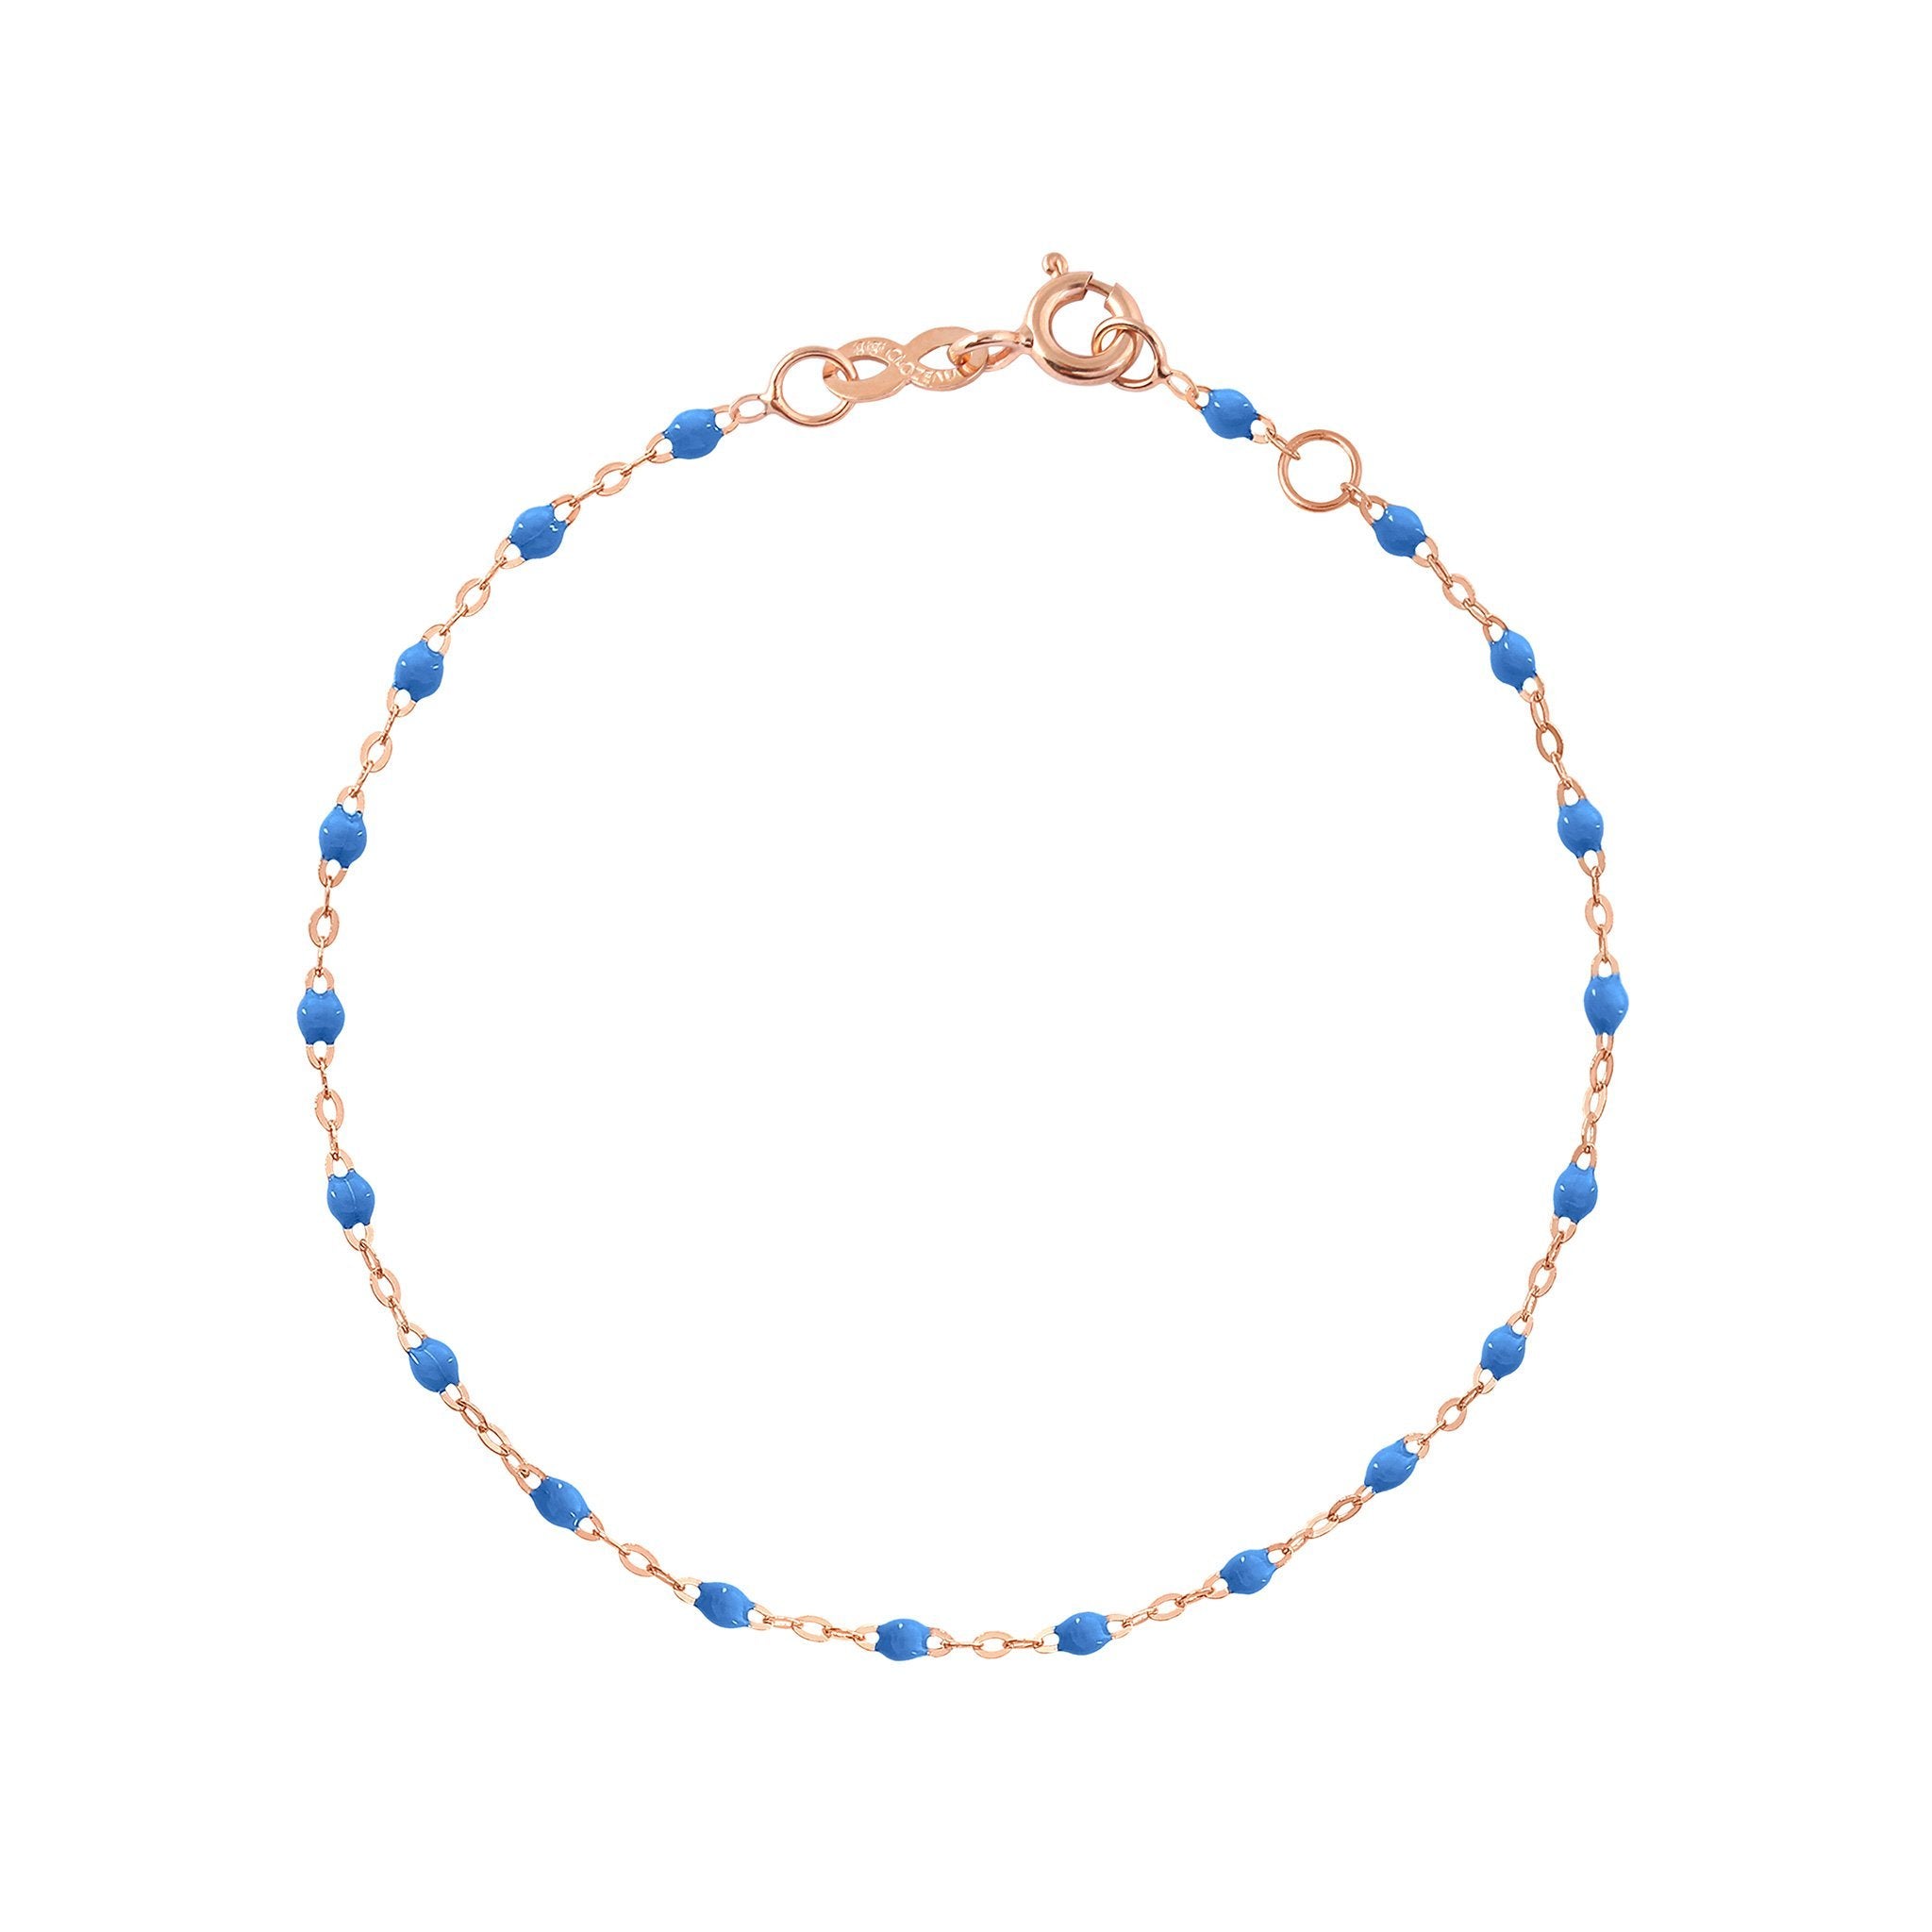 Bracelet bleu fluo Classique Gigi, or rose, 15 cm classique gigi Référence :  b3gi001r0415xx -1